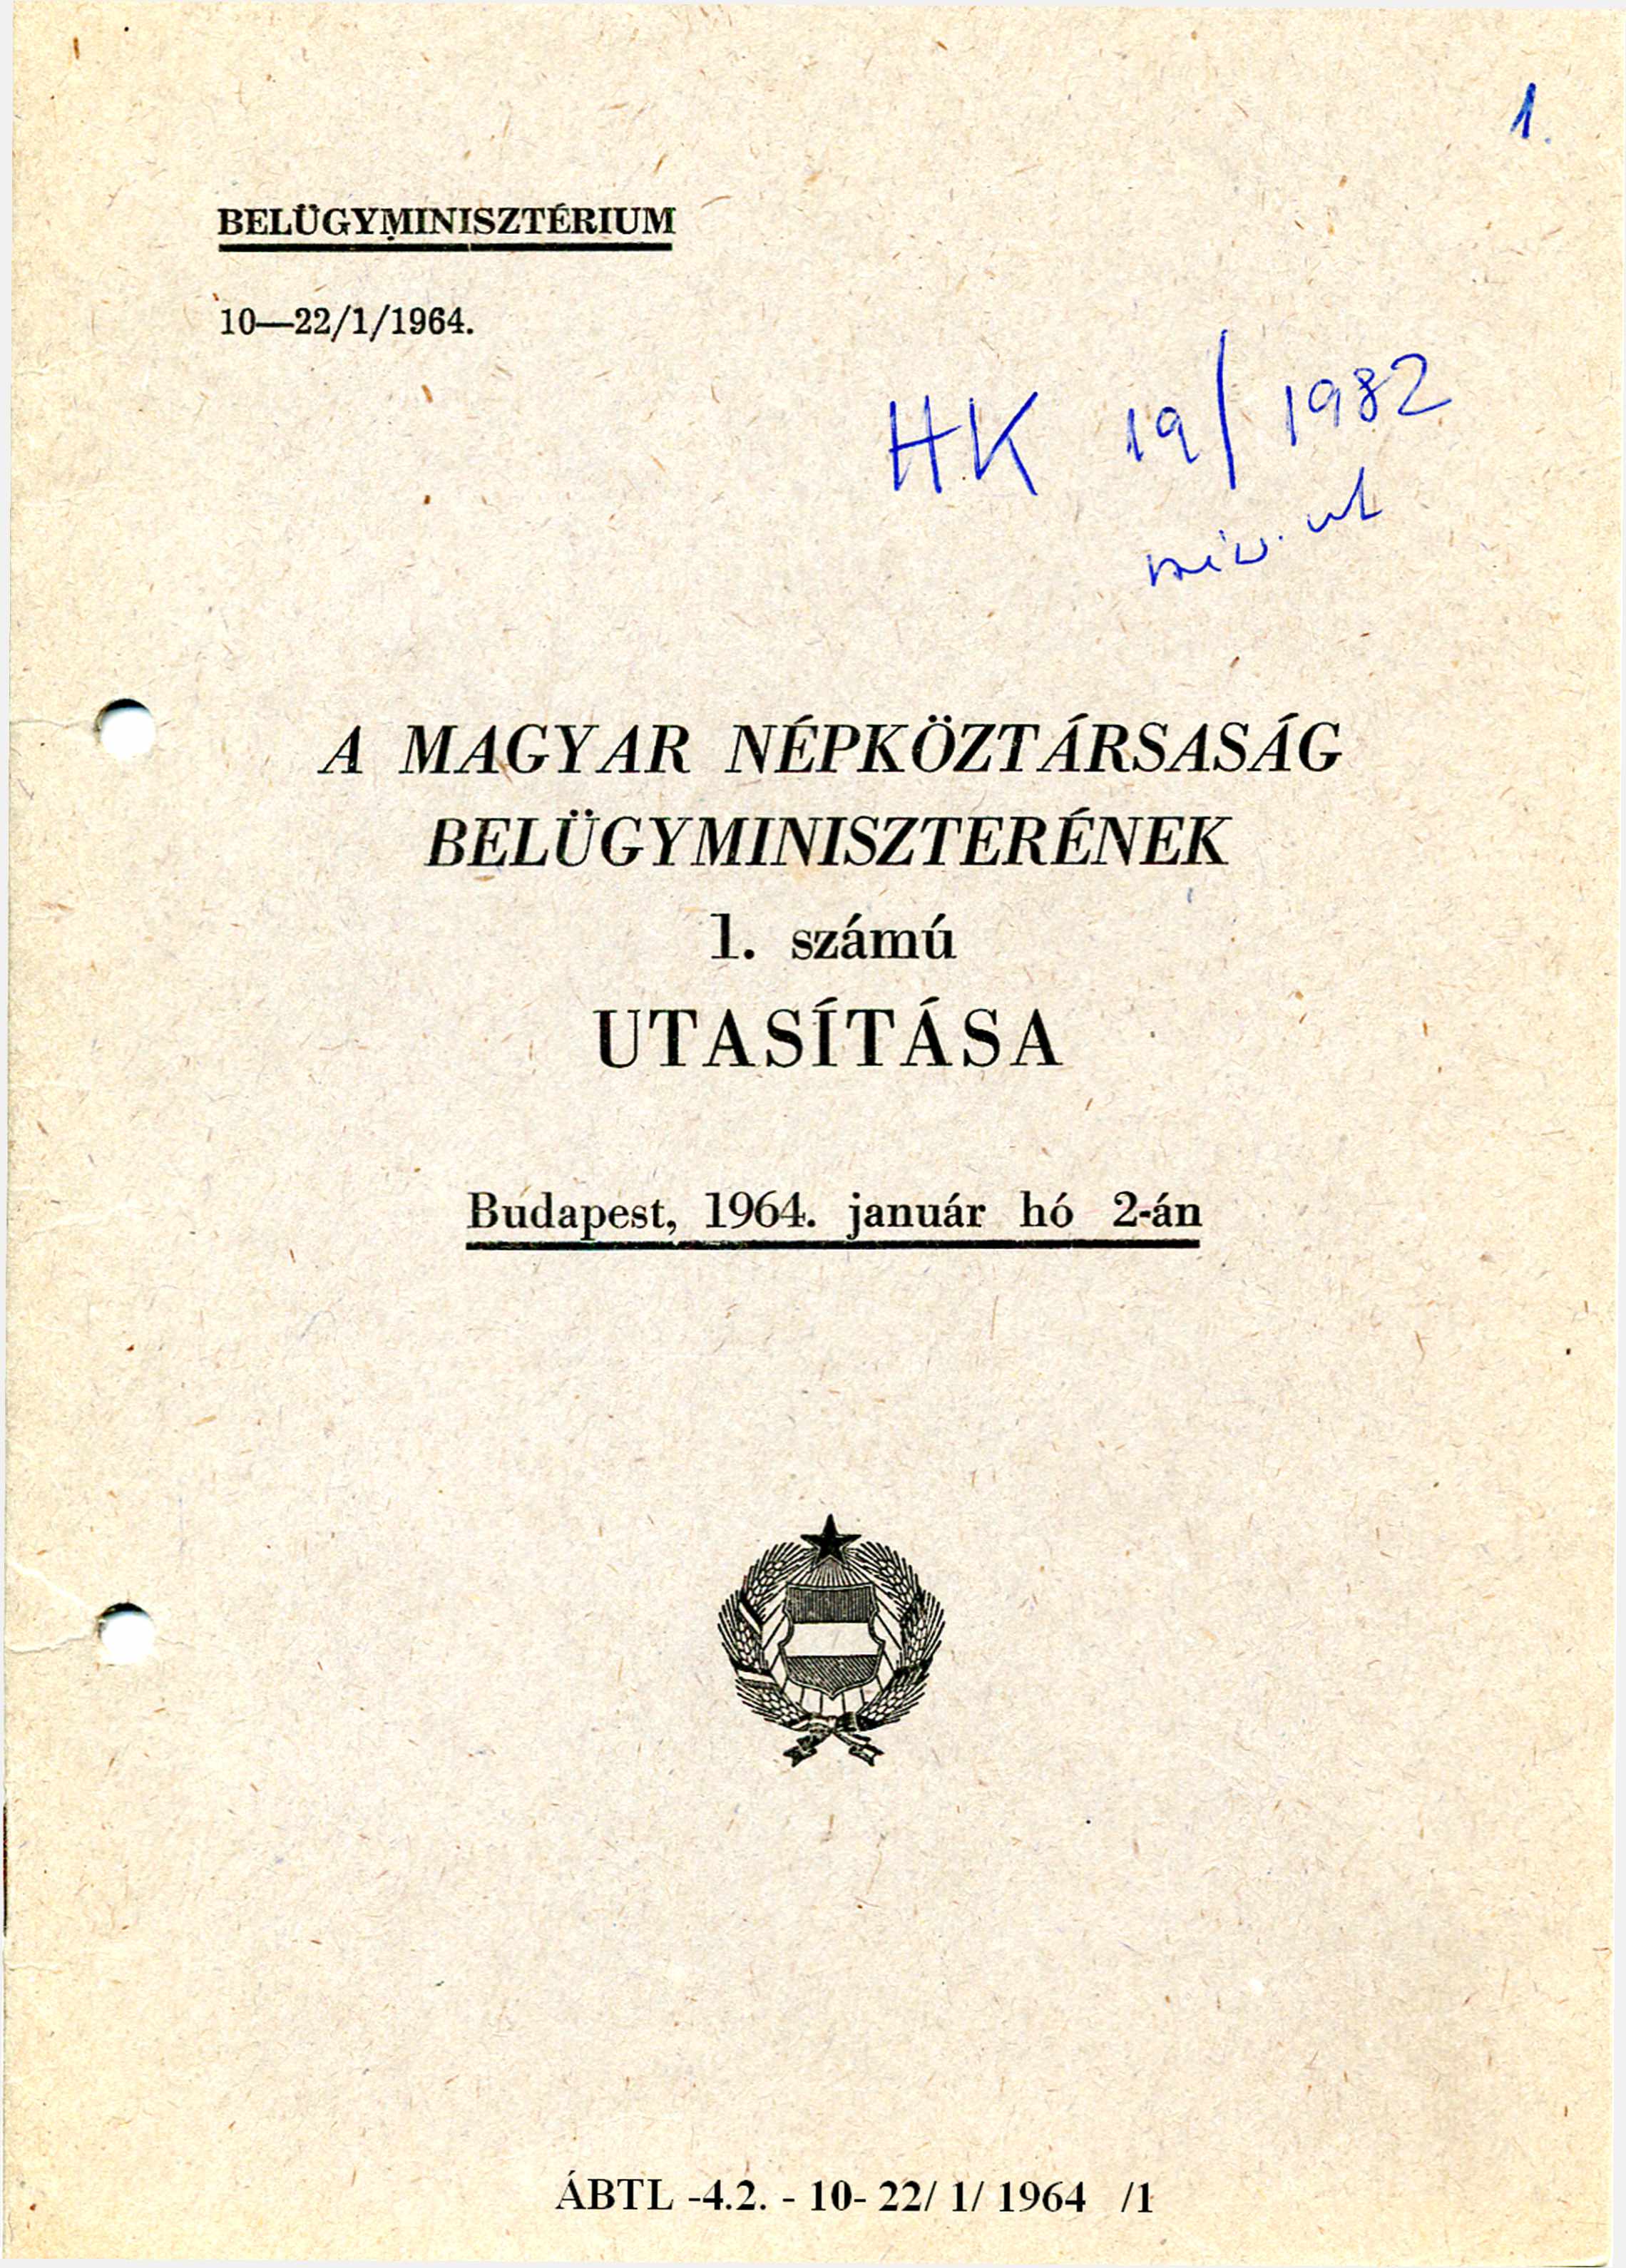 BELÜGYMINISZTÉRIUM 10-22/1/1964. HK19/1982min. ut.